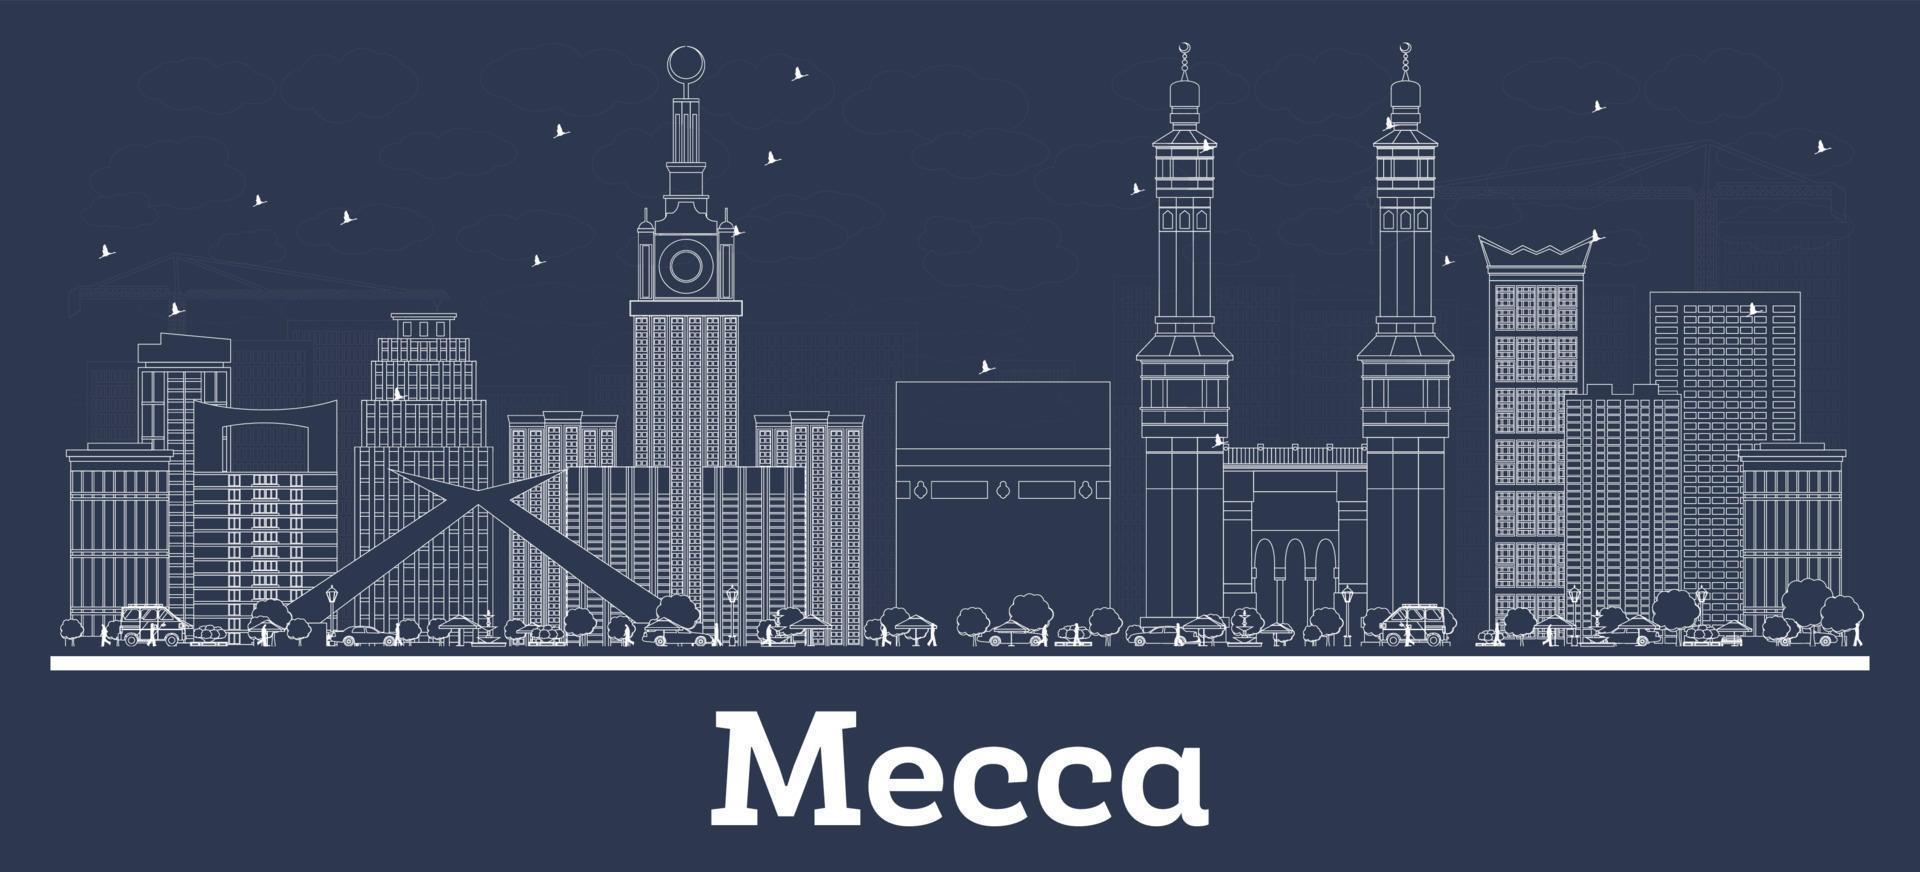 delineie o horizonte da cidade de meca arábia saudita com edifícios brancos. vetor